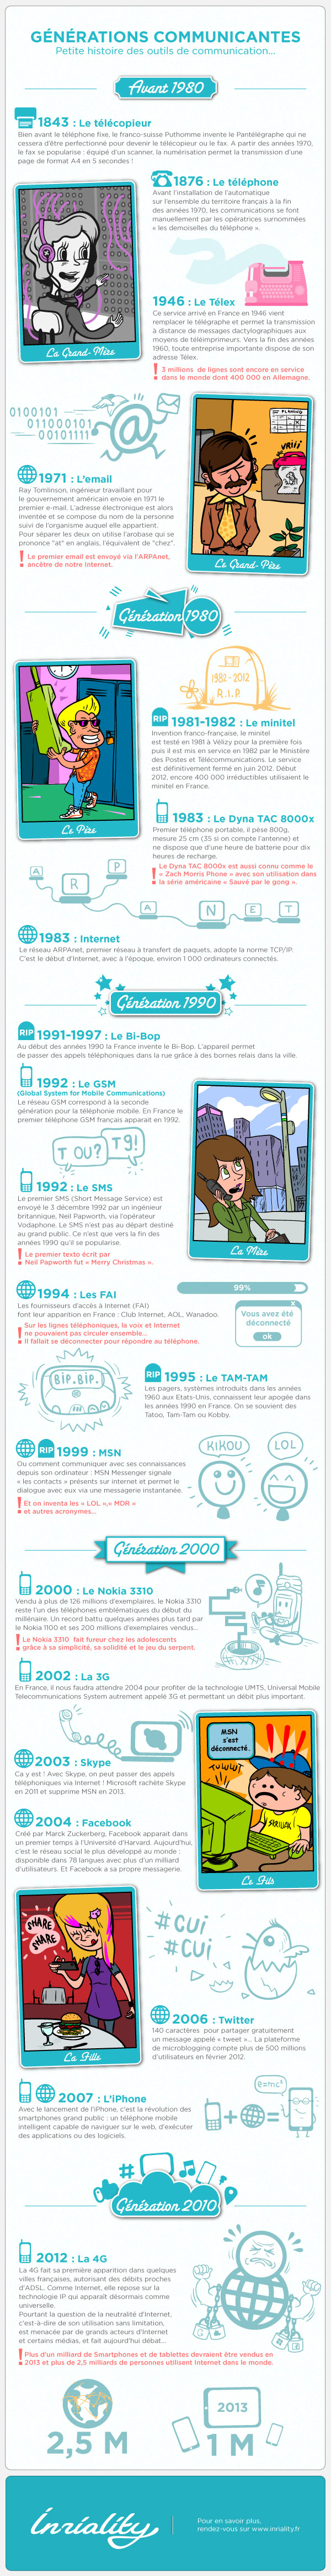 histoire des telecoms